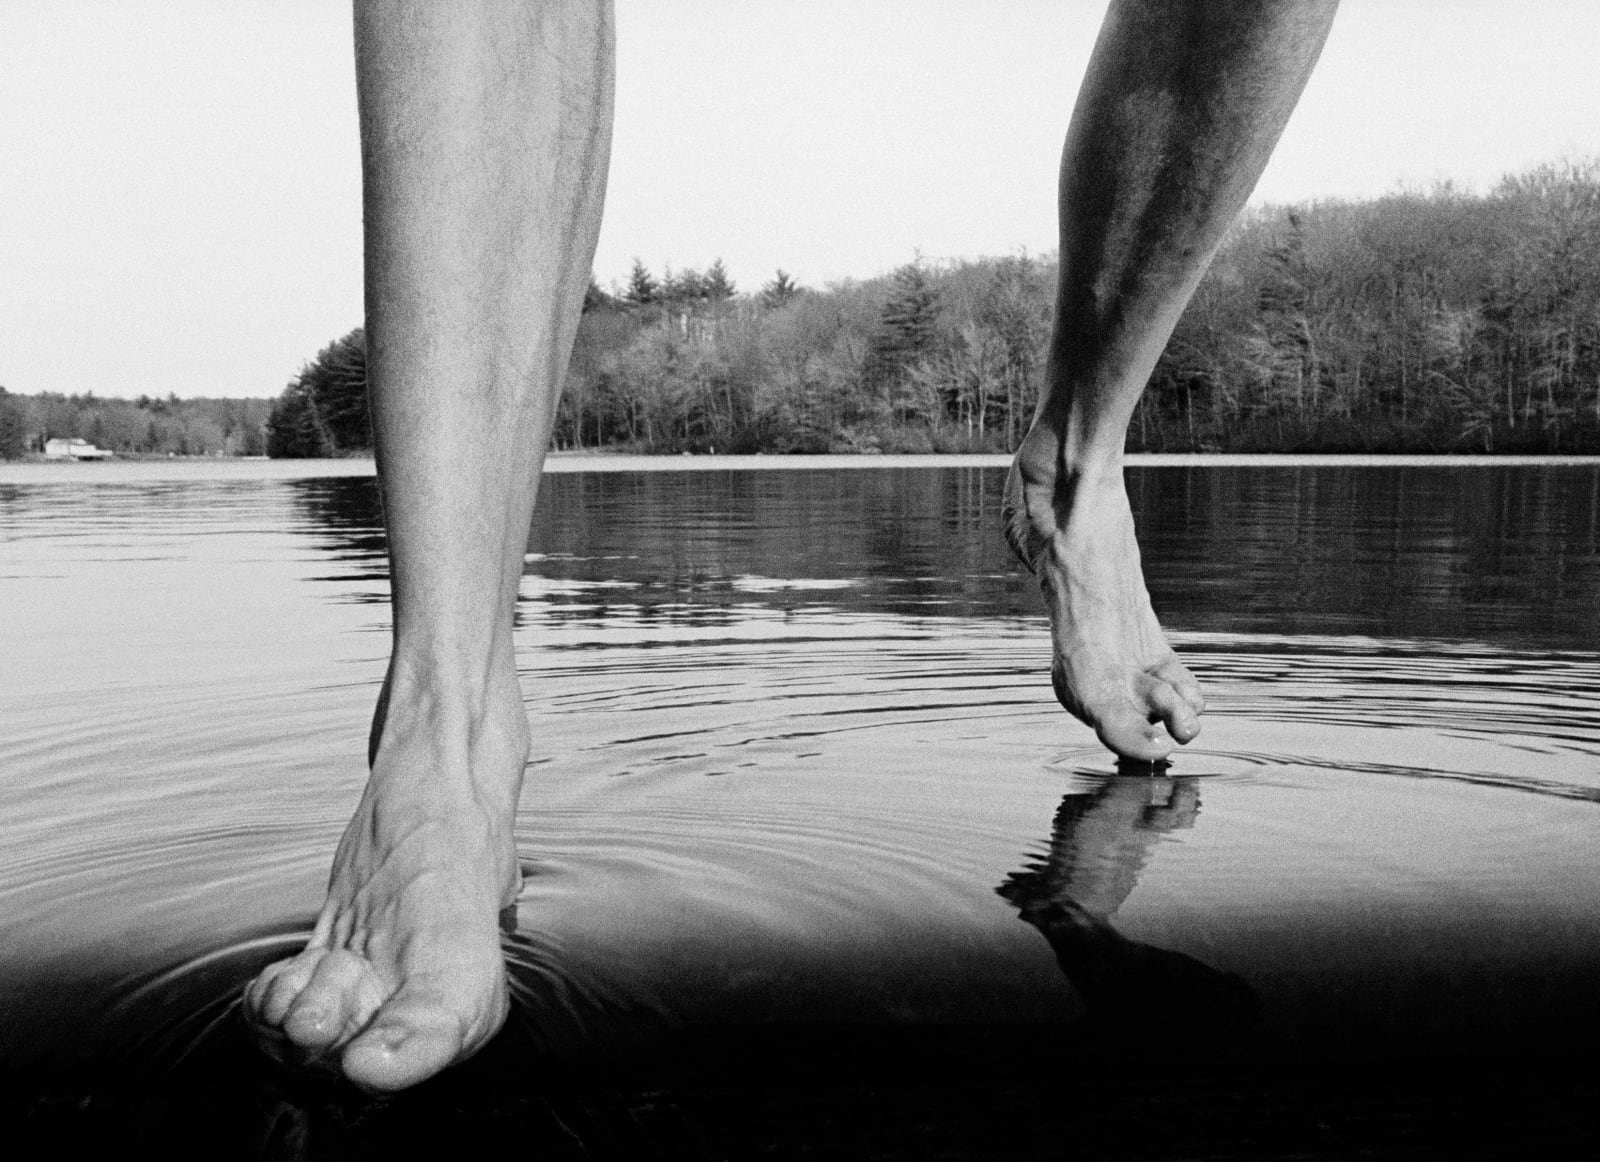 Arno Minkkinen, Beach Pond, Connecticut, 1974